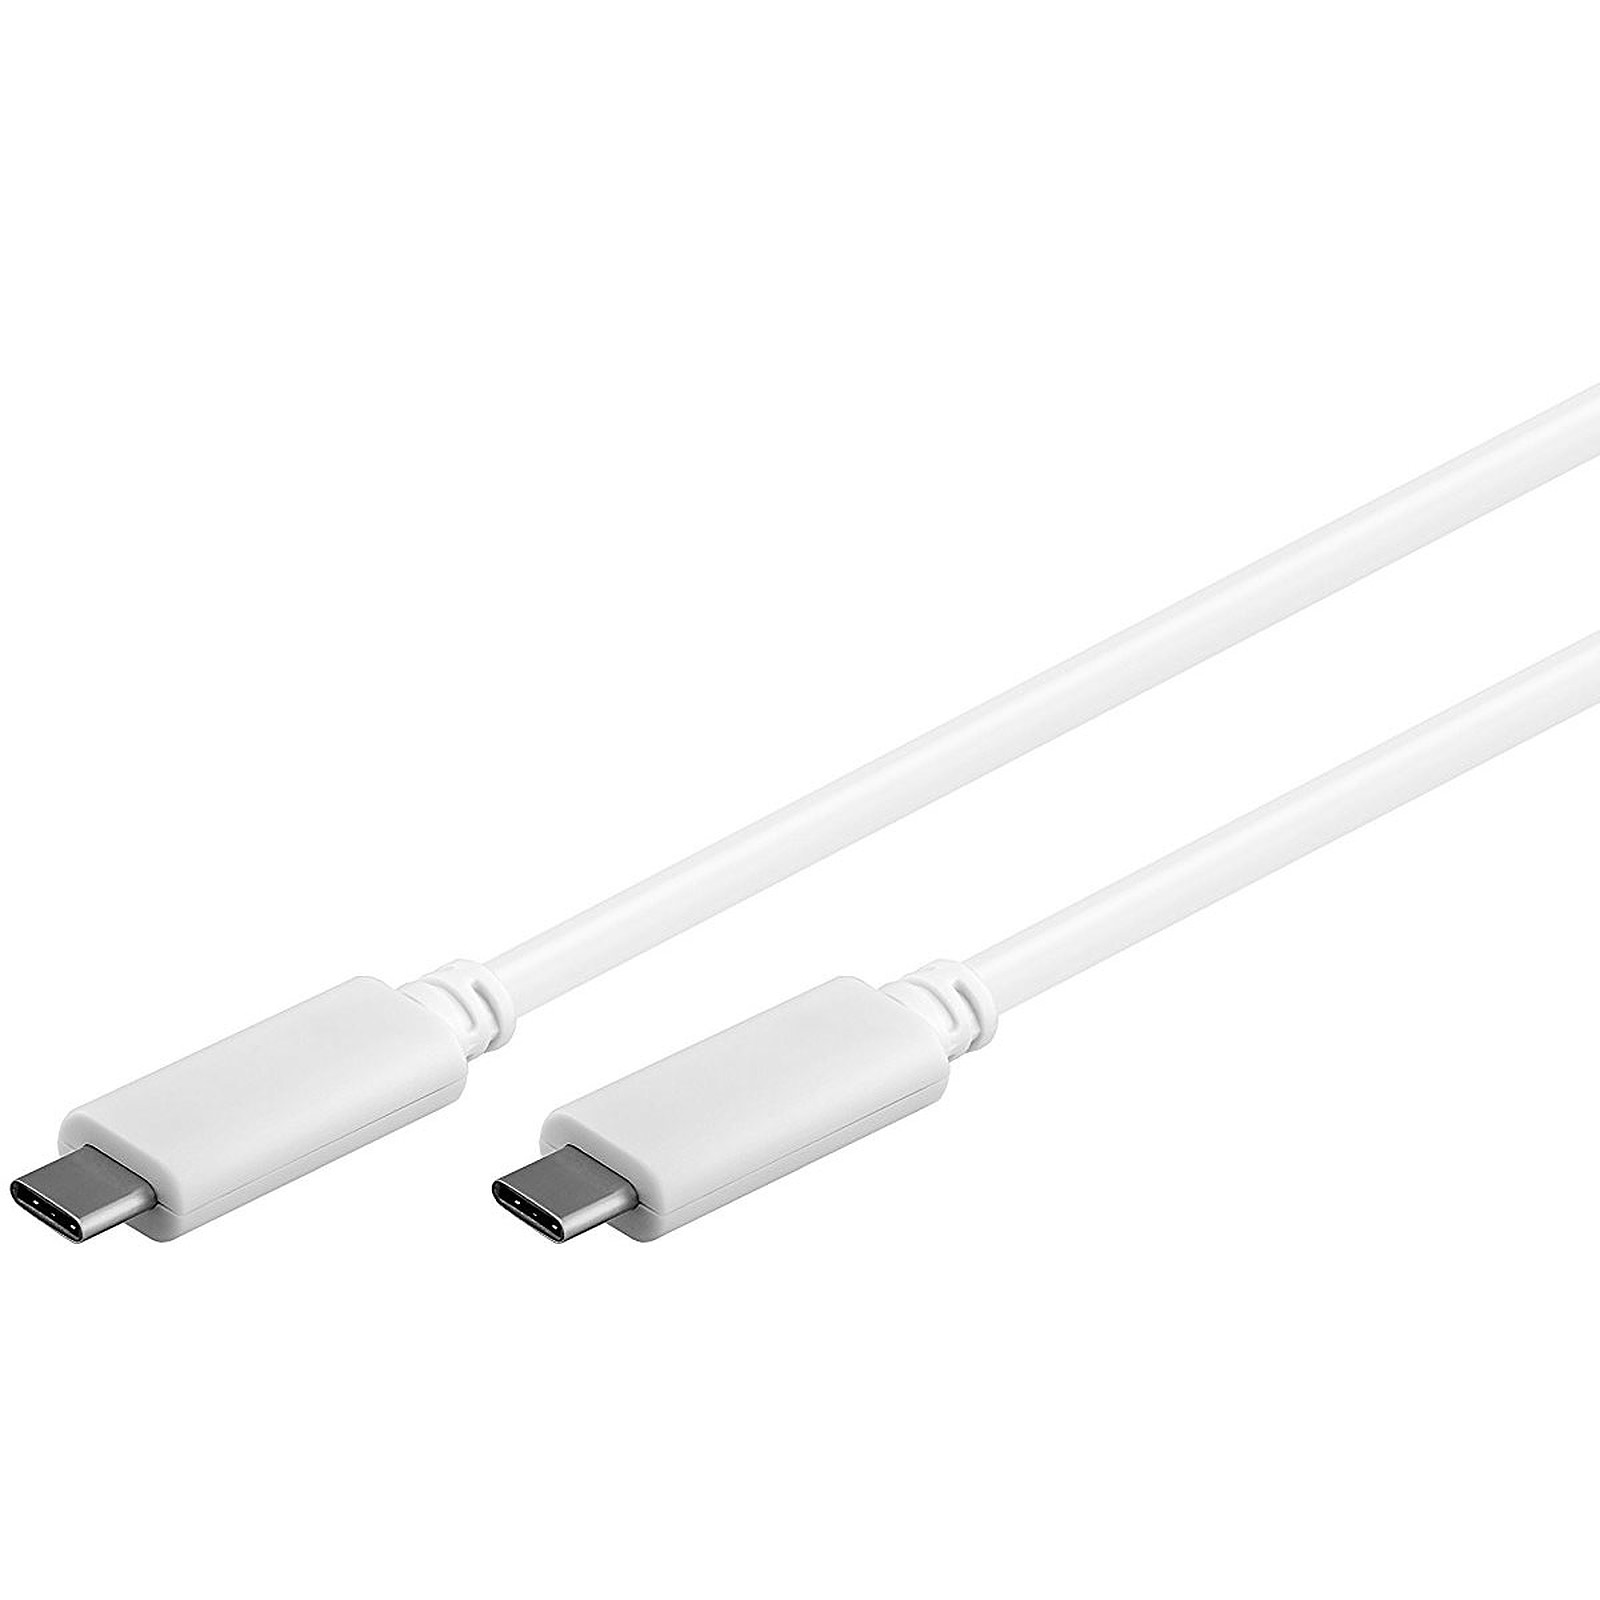 Cable USB 3.1 Type C (Male/Male) Blanc - 0.5 m - USB Generique